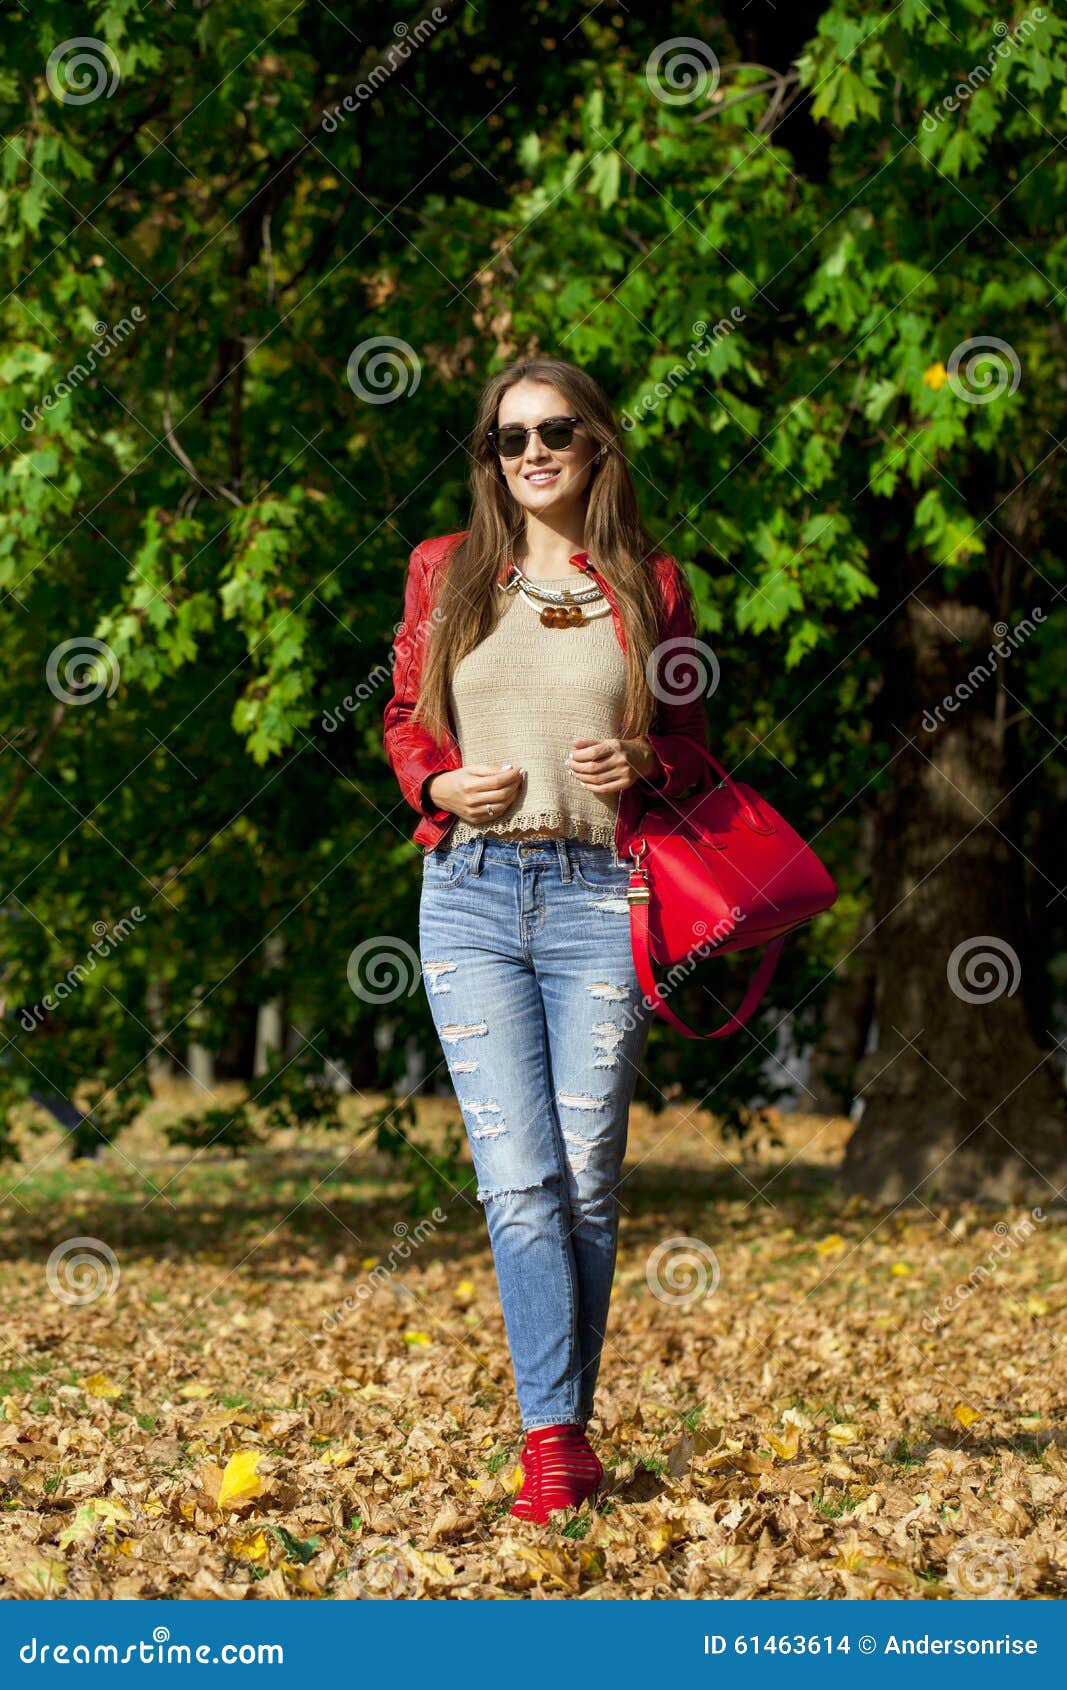 La Mujer Joven En Chaqueta Roja De La Moda Y Los Tejanos Otoño Parquean Foto de archivo Imagen de exterior, 61463614